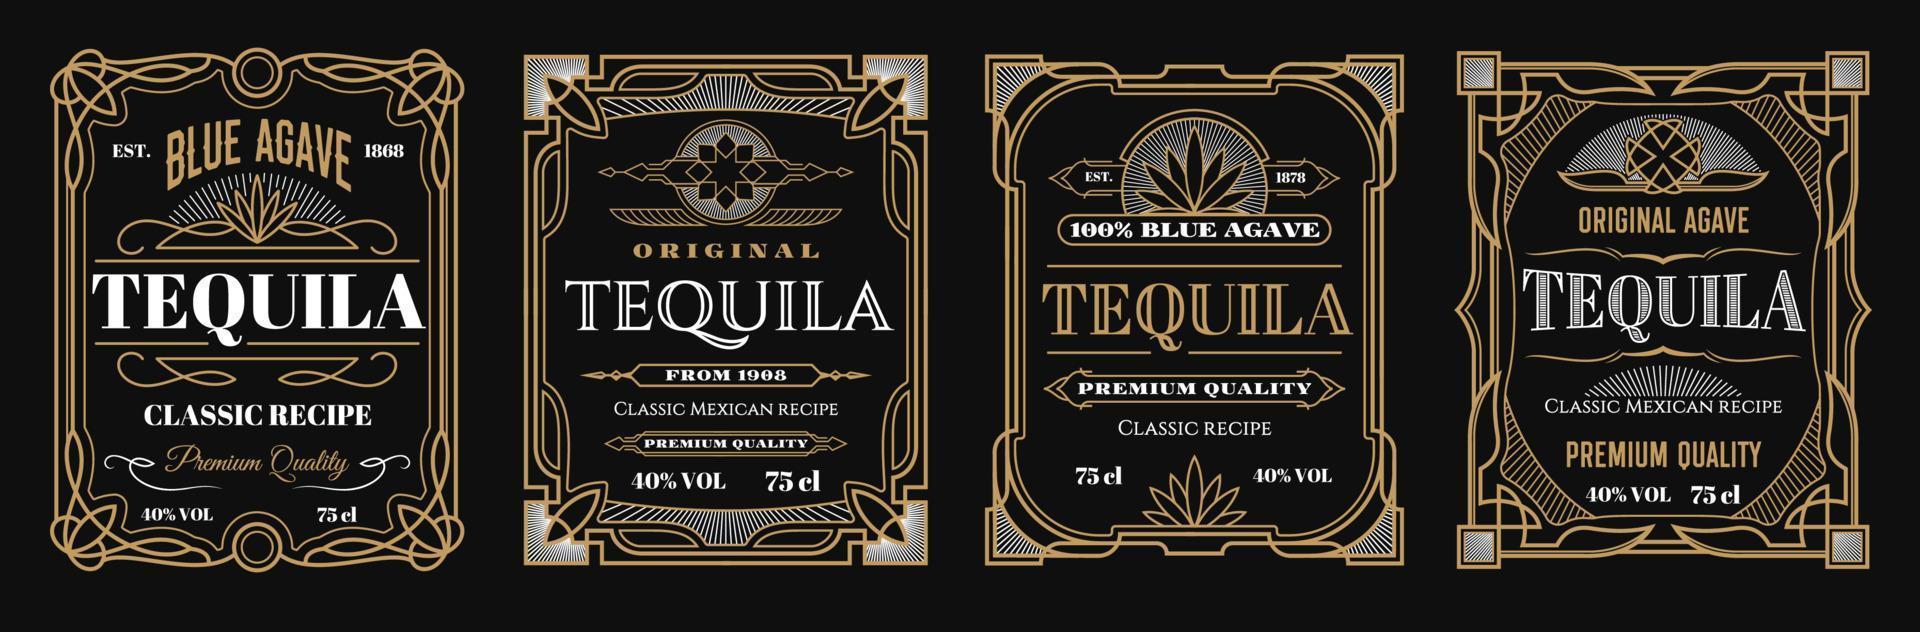 Vintage tequila labels, alcohol frames backgrounds vector